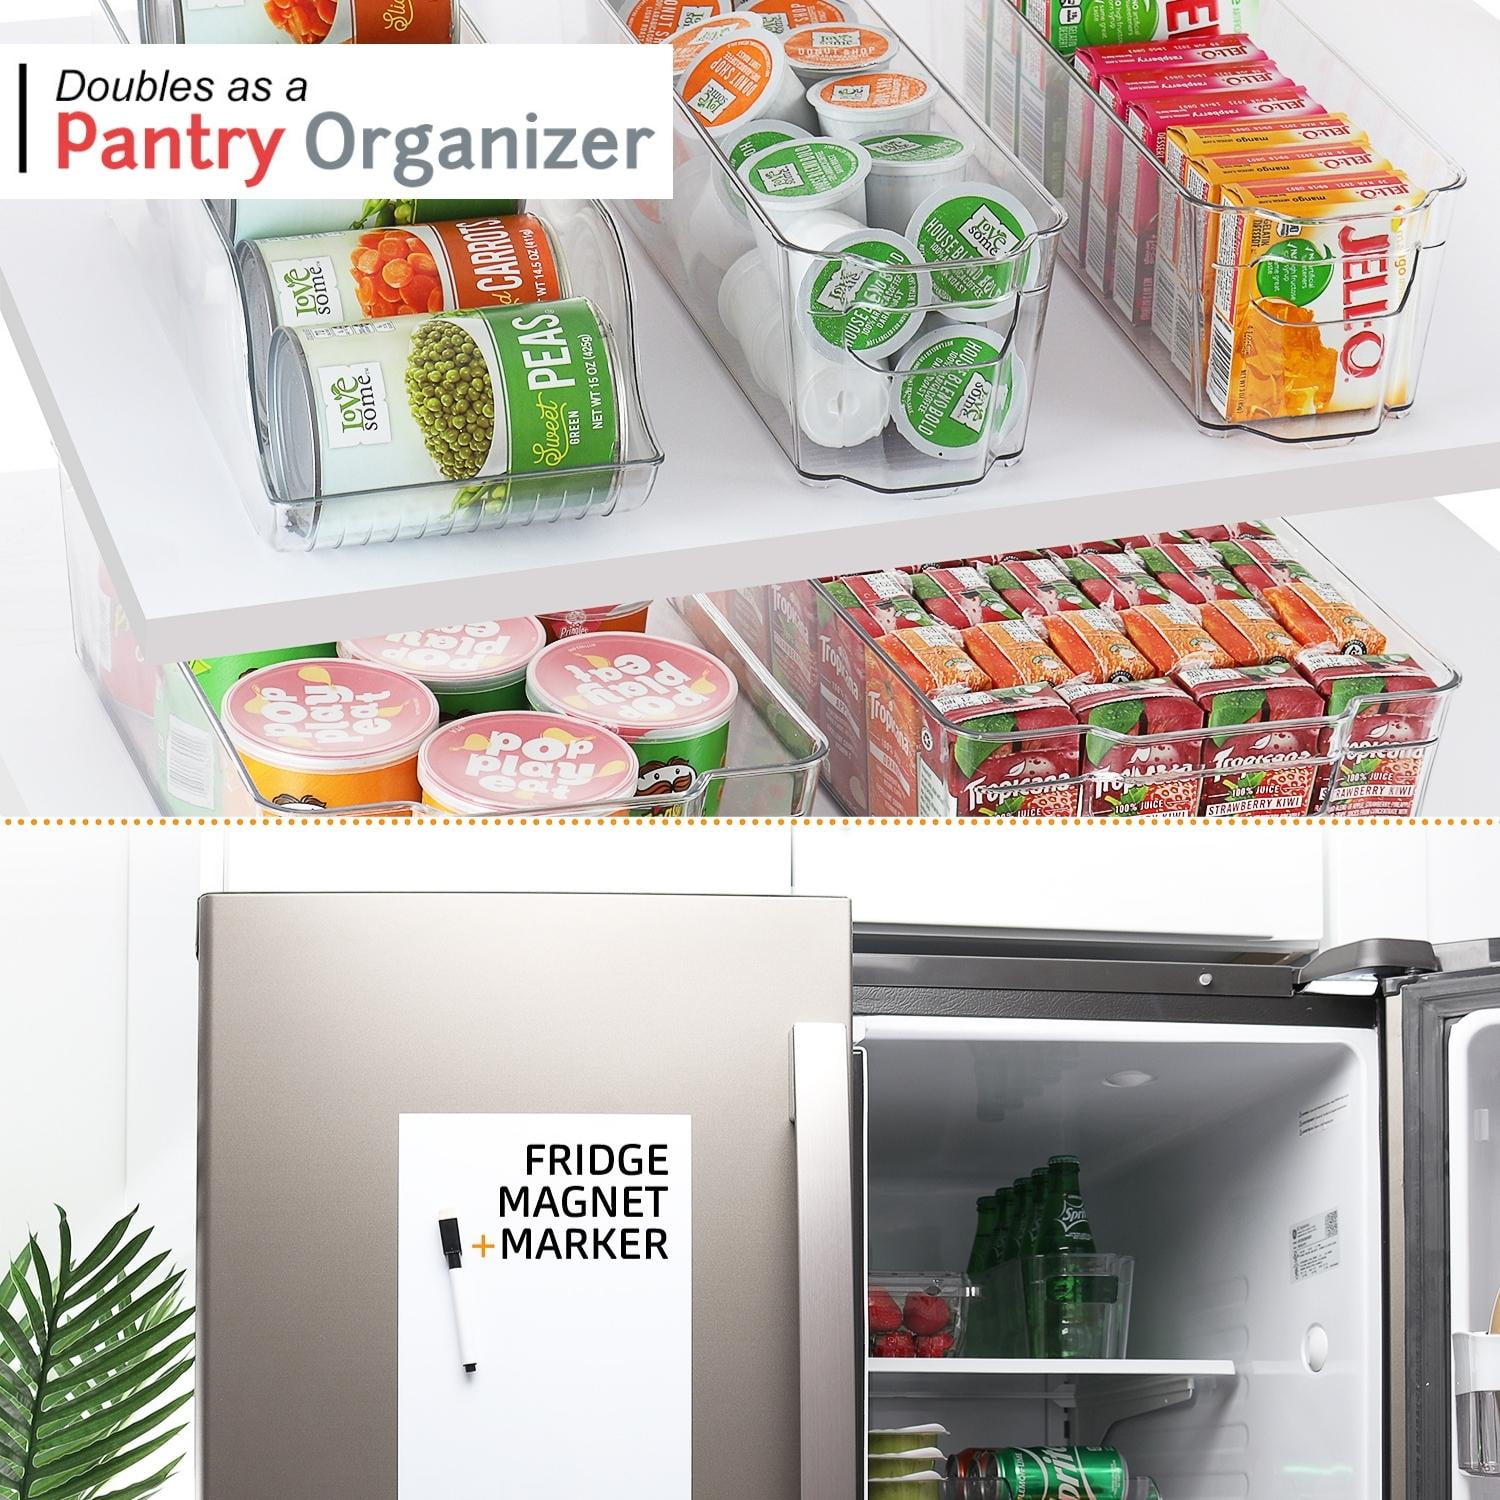 Sanders Collection Storagebud 8 Piece Refrigerator Organizer Bins - Stackable Freezer Organizer - Clear Refrigerator Organizer - Acrylic Fridge Bin - 8 Piece Set